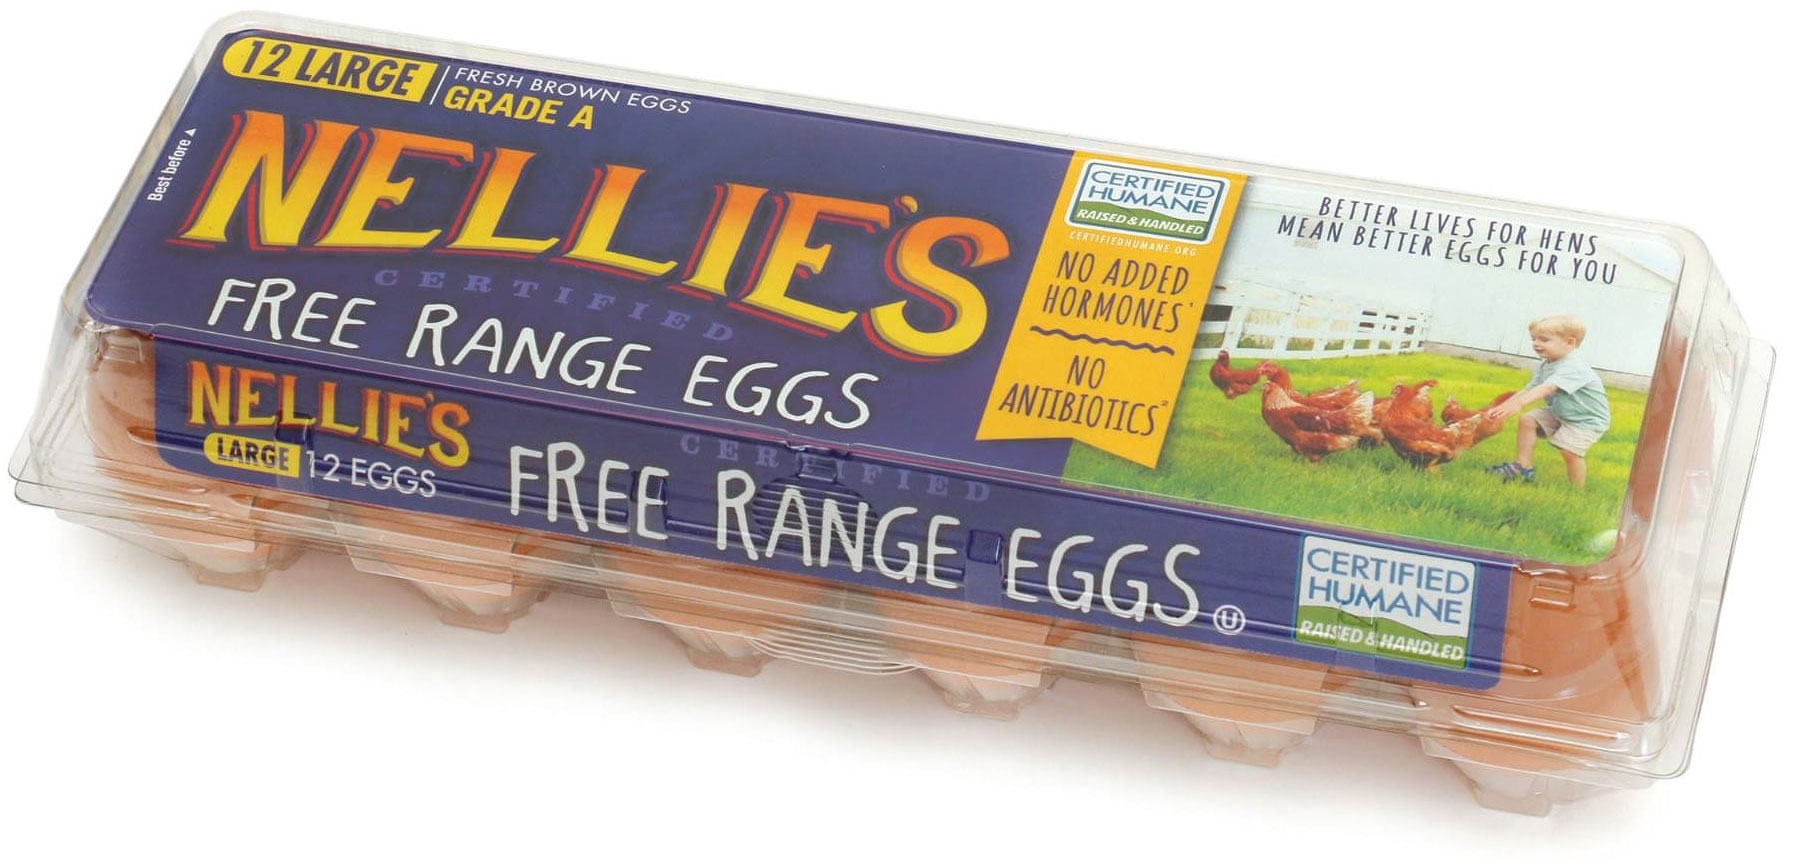 carton of Nellie's free range eggs